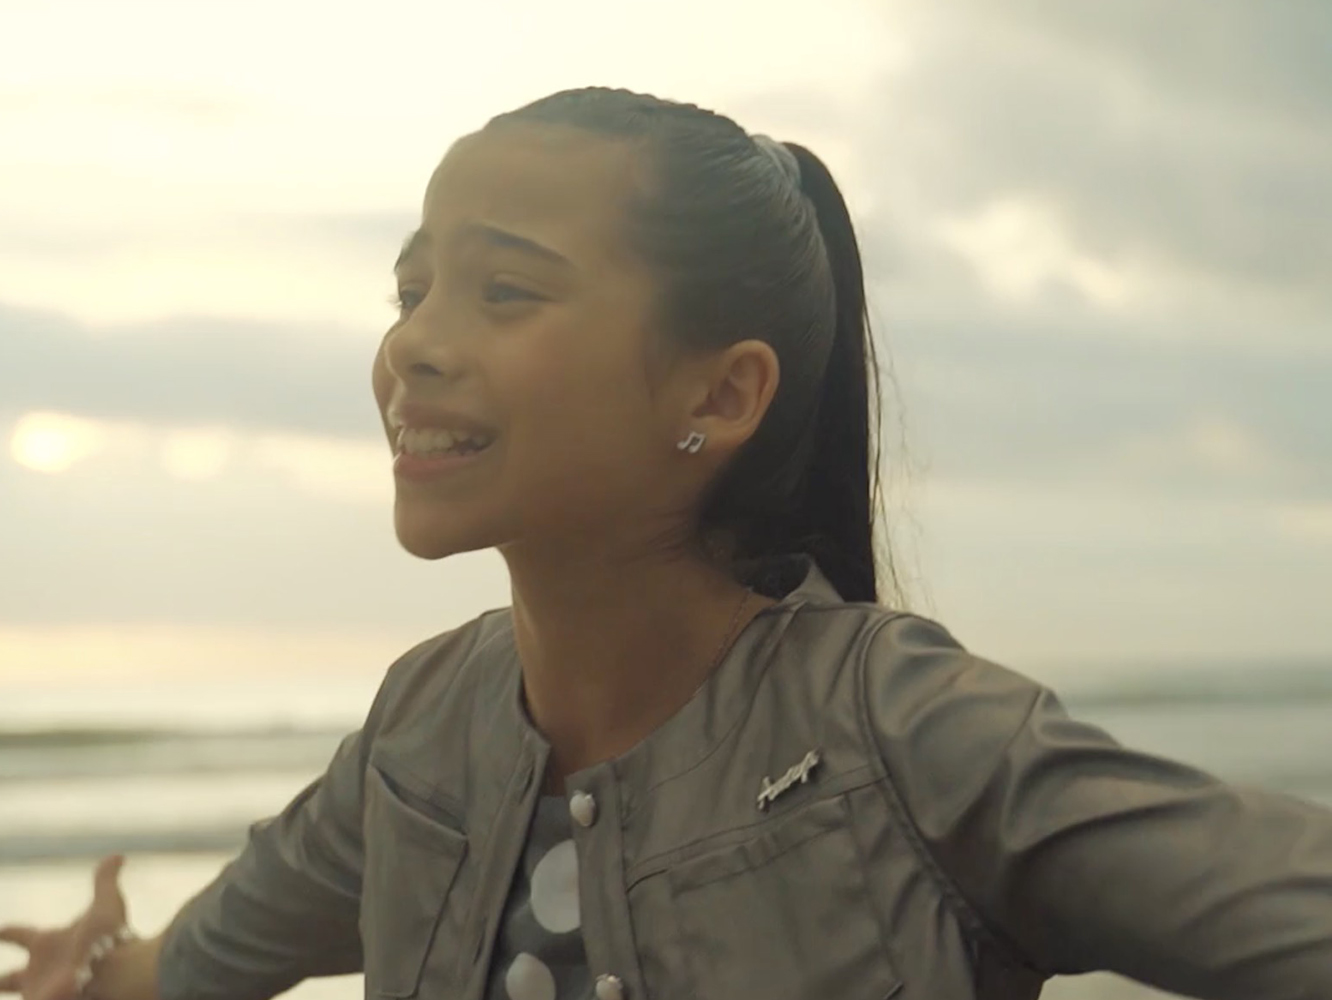  Melani cumple al fin 12 años en el vídeo de ‘Marte’, la canción española para Eurovisión Junior 2019